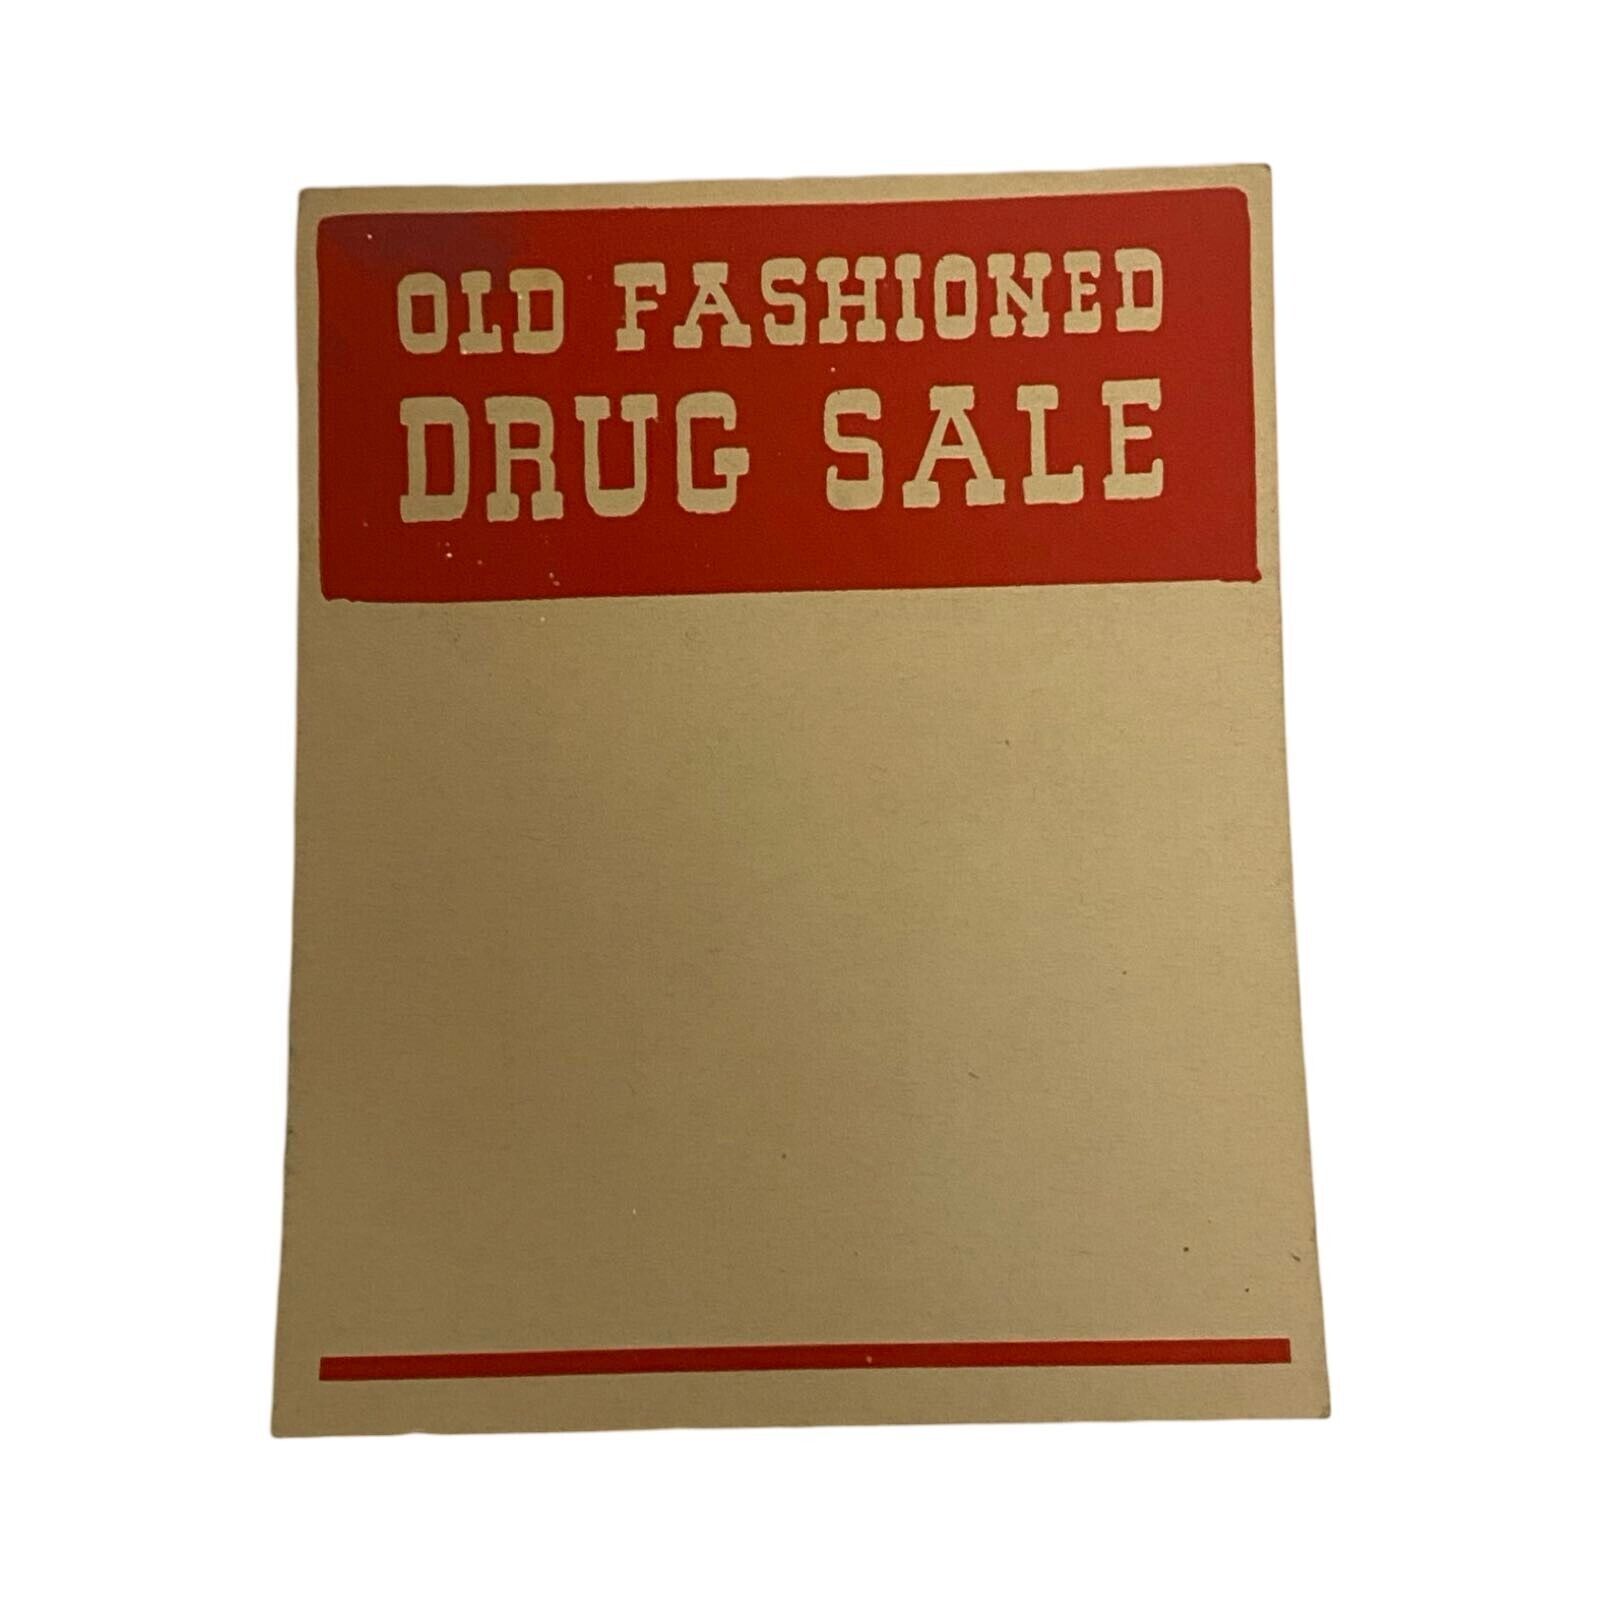 Vintage Drug Store Old Fashioned Drug Sale Sign Poster Label 5 Inch Tall